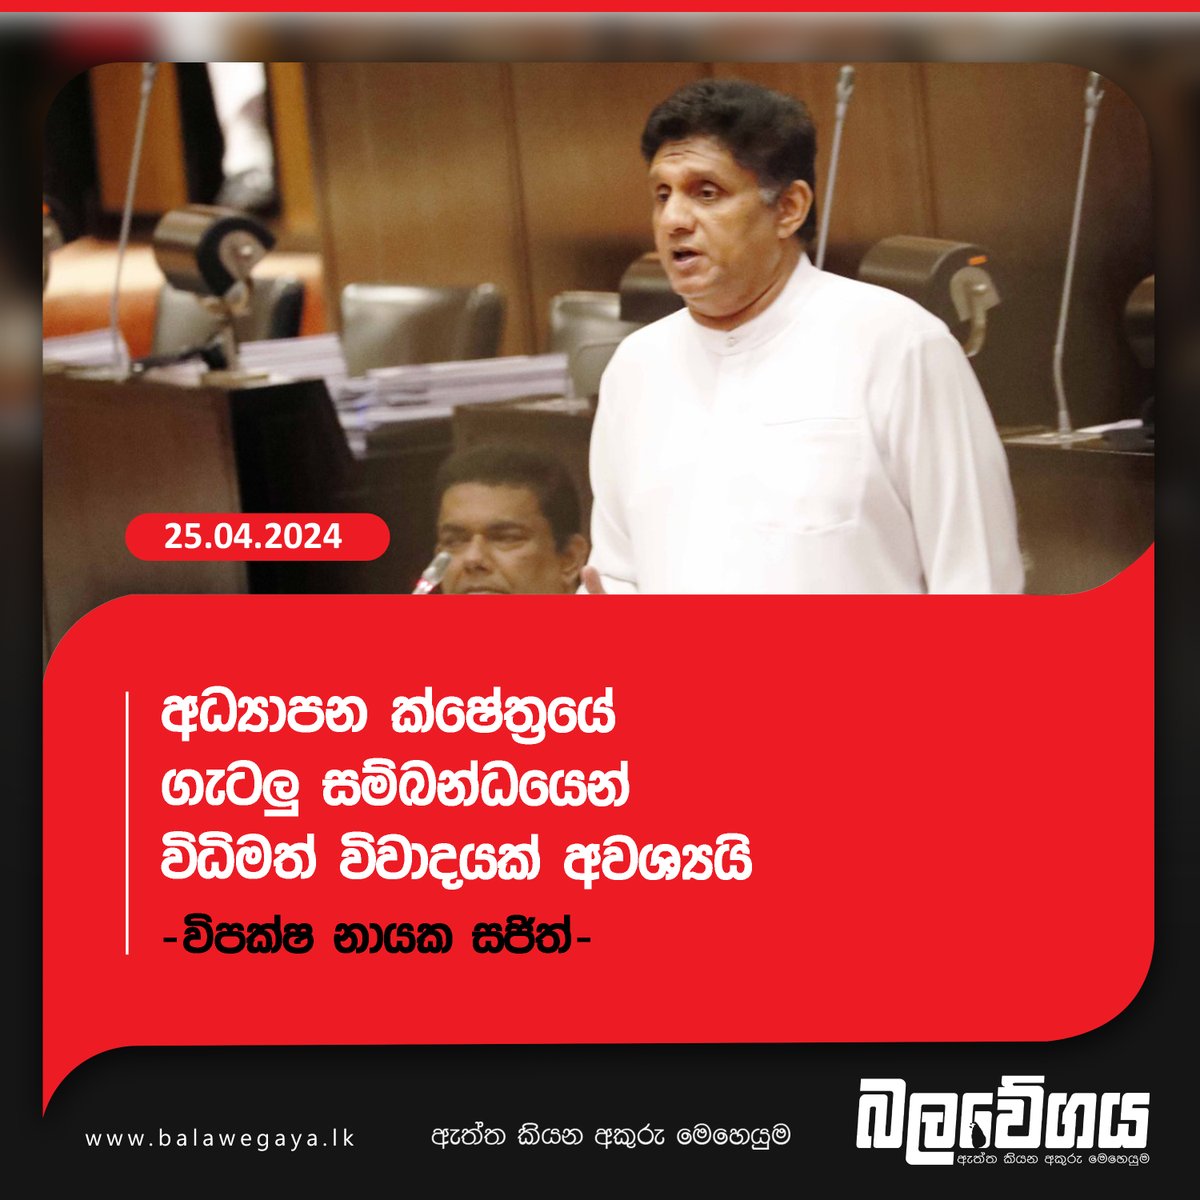 අධ්‍යාපන ක්ෂේත්‍රයේ ගැටලු සම්බන්ධයෙන් විධිමත් විවාදයක් අවශ්‍යයි - විපක්ෂ නායක සජිත් (VIDEO)

දැන ගන්න - balavegaya.lk/?p=18986

#lka #SriLanka #Balawegaya #sjb #SamagiJanaBalawegaya #OppositionLeader #SajithPremadasa